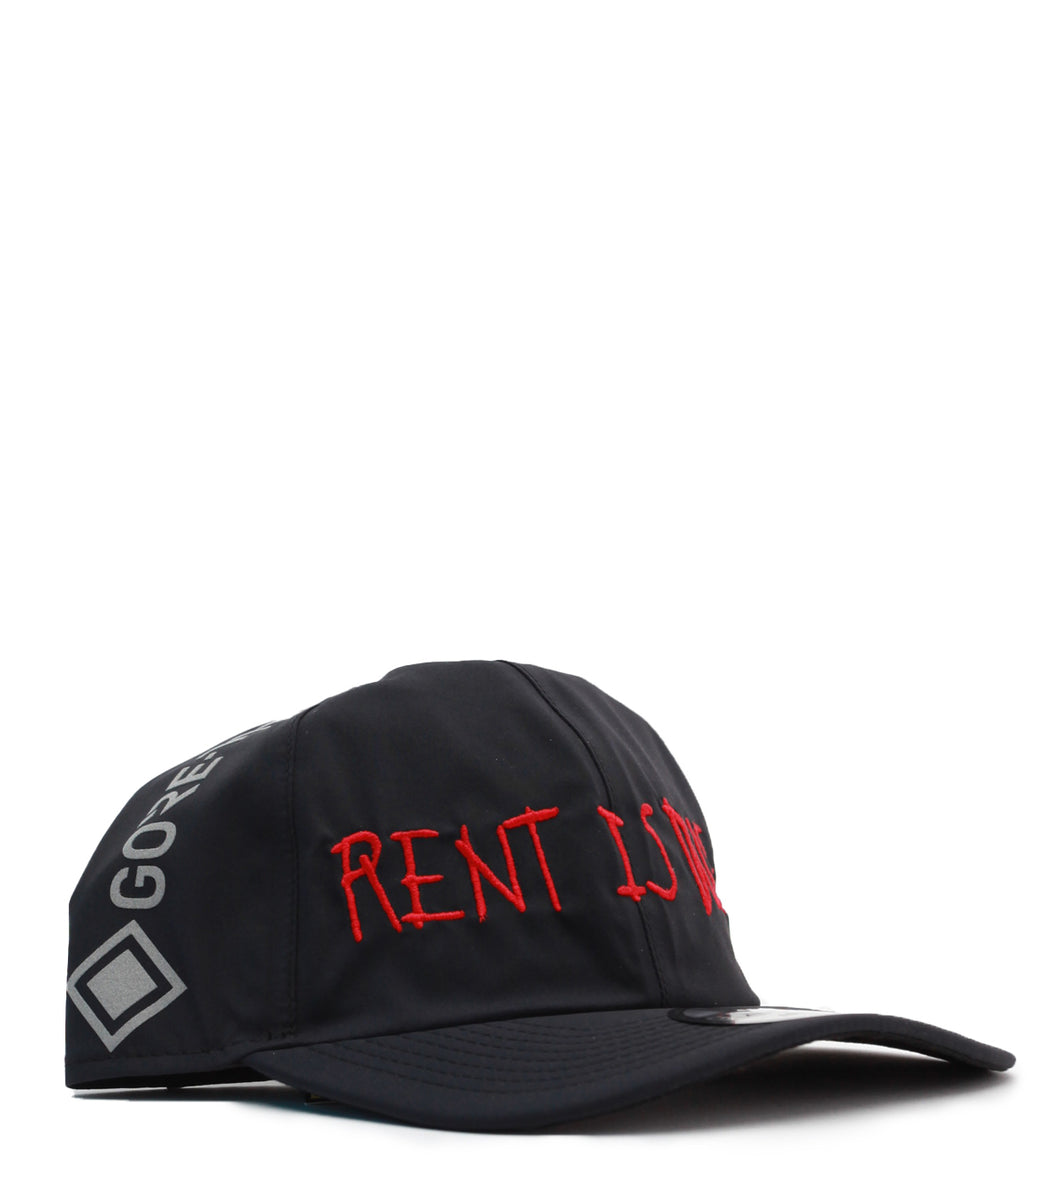 Rent Is Due x GTX x New Era Cap